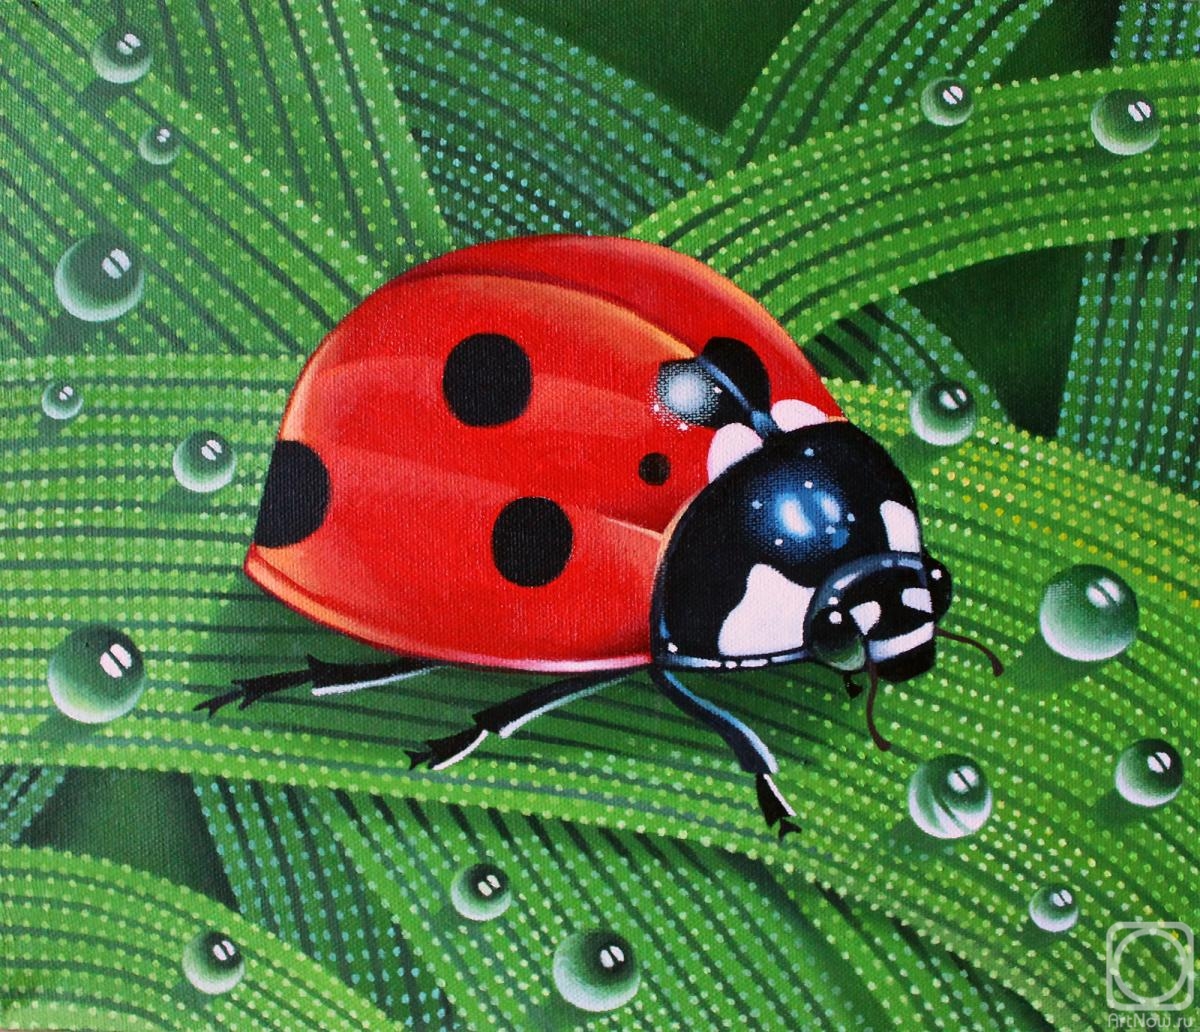 Belova Asya. Ladybug